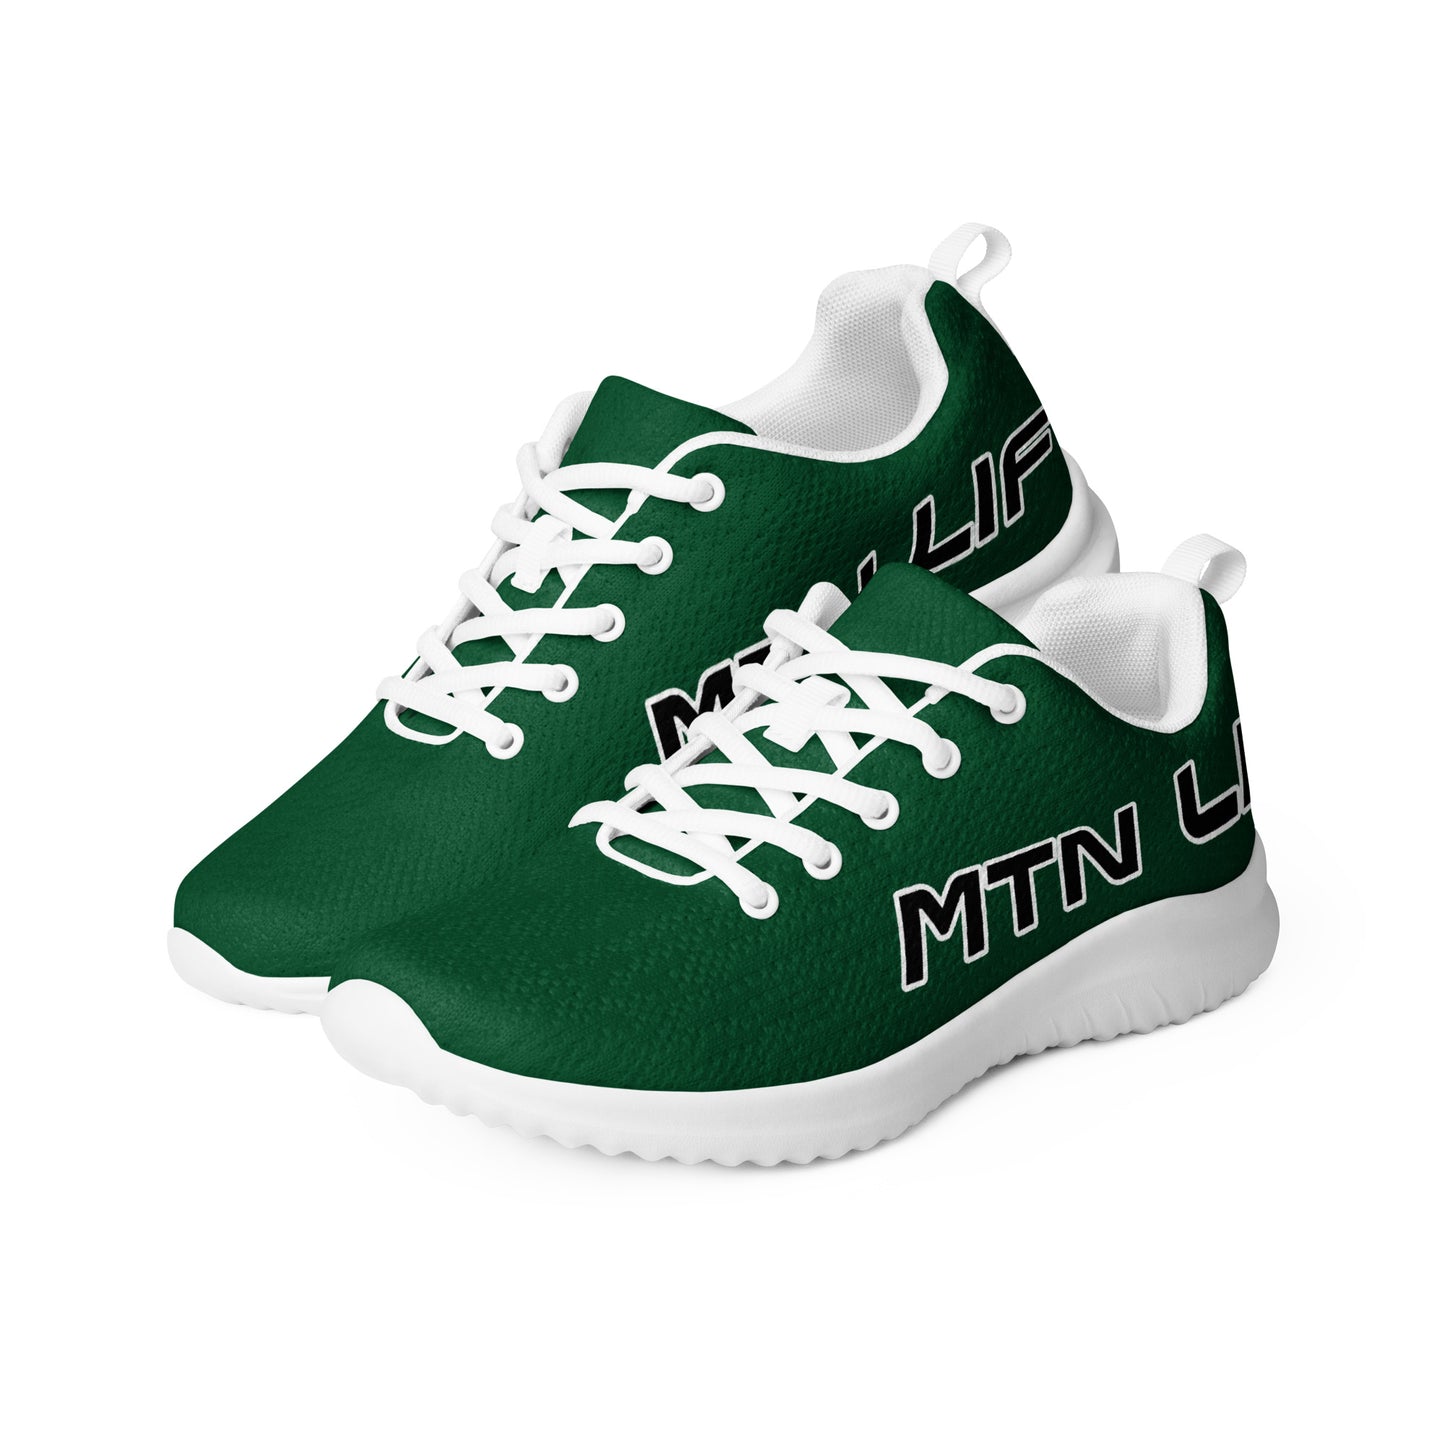 Men’s MTN LIF™ athletic shoes